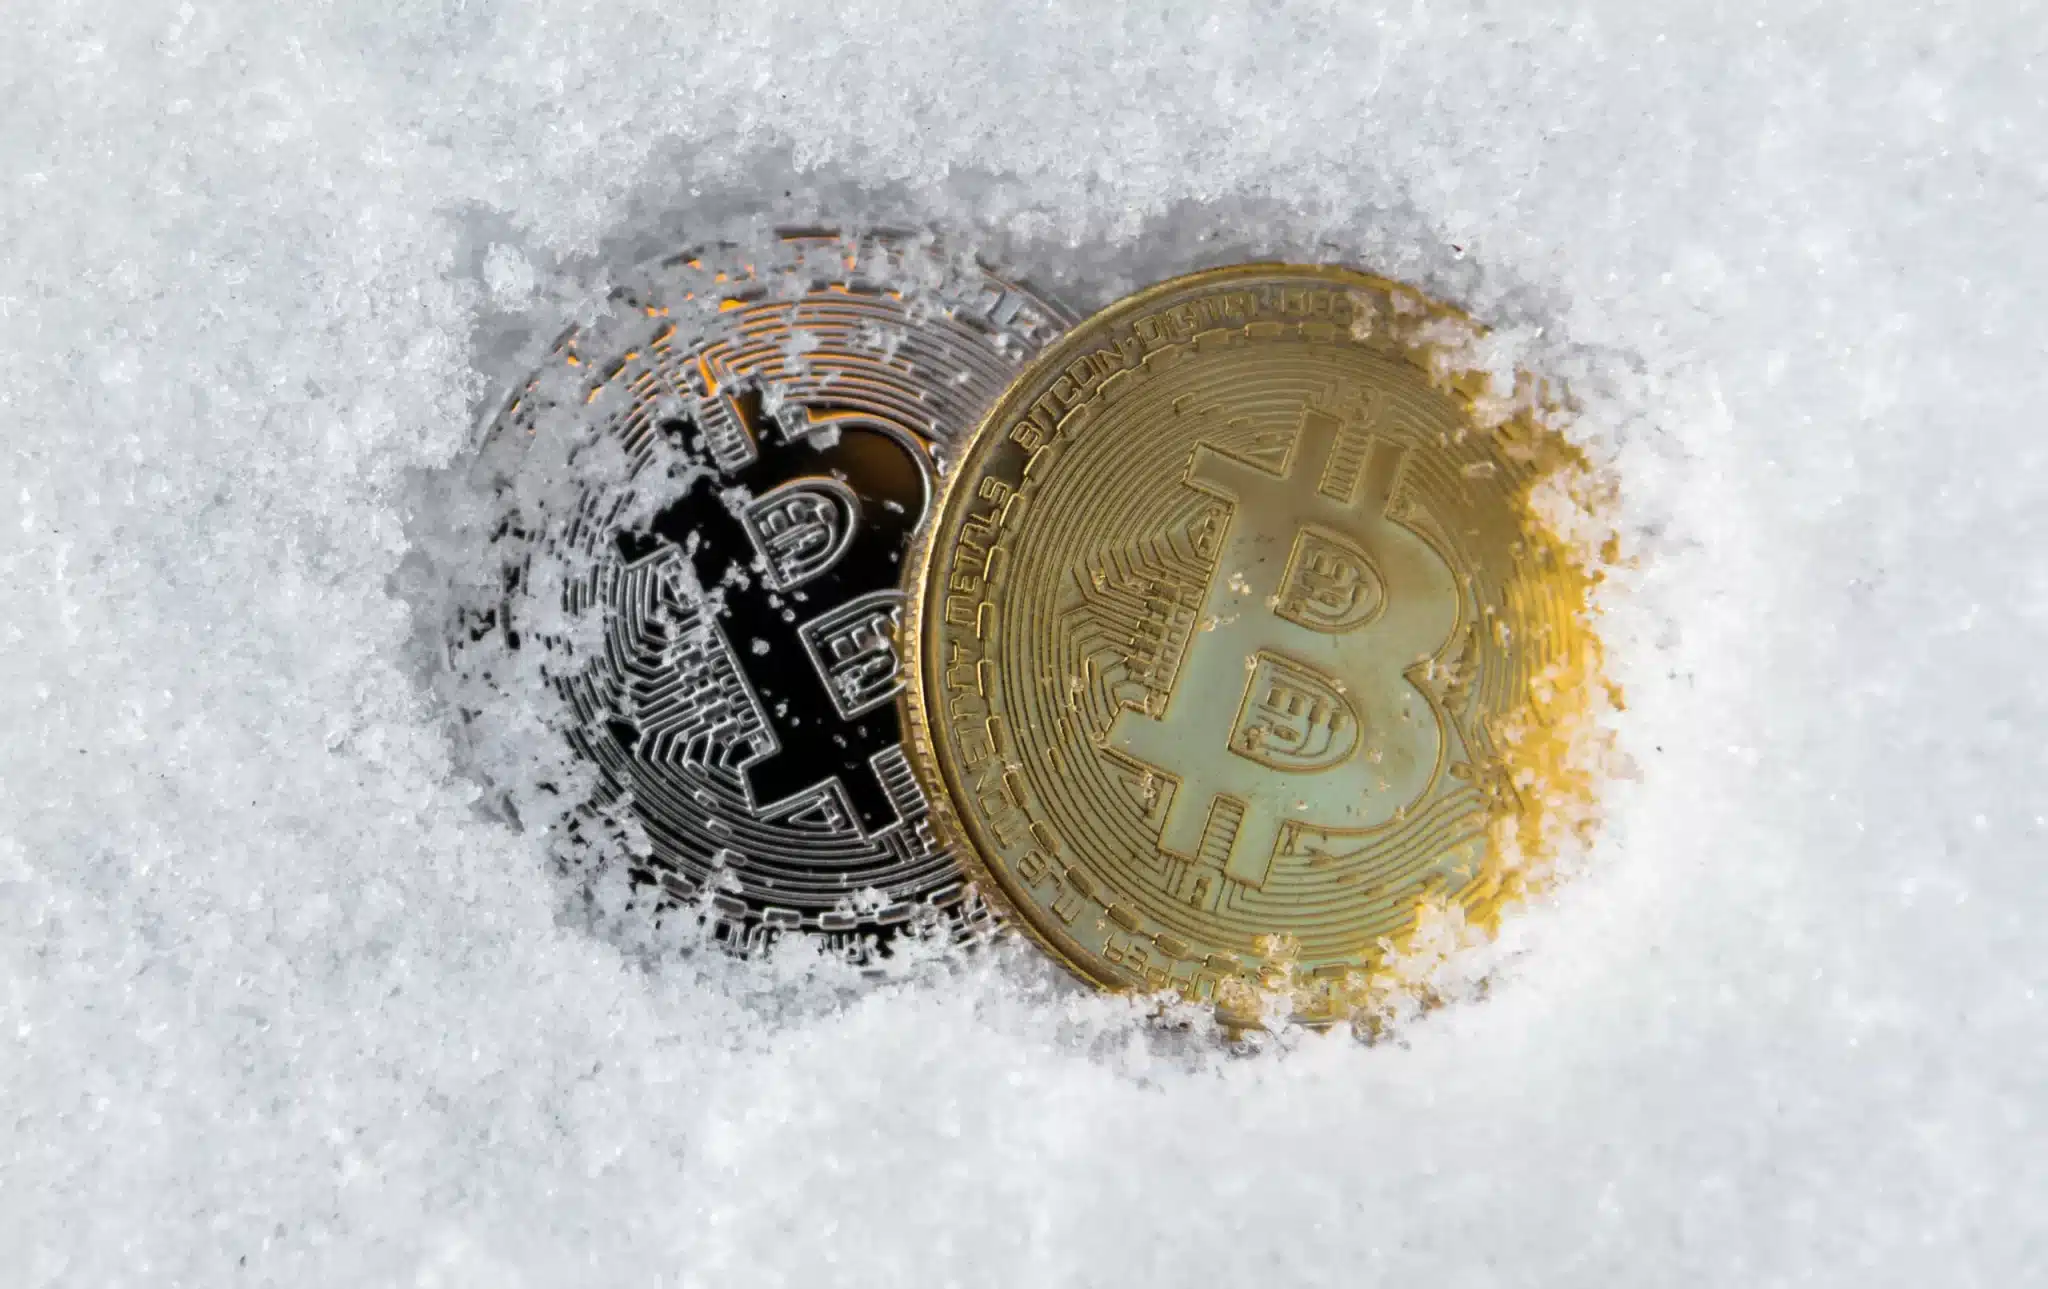 Crypto Winter elimina a millonarios de Bitcoin